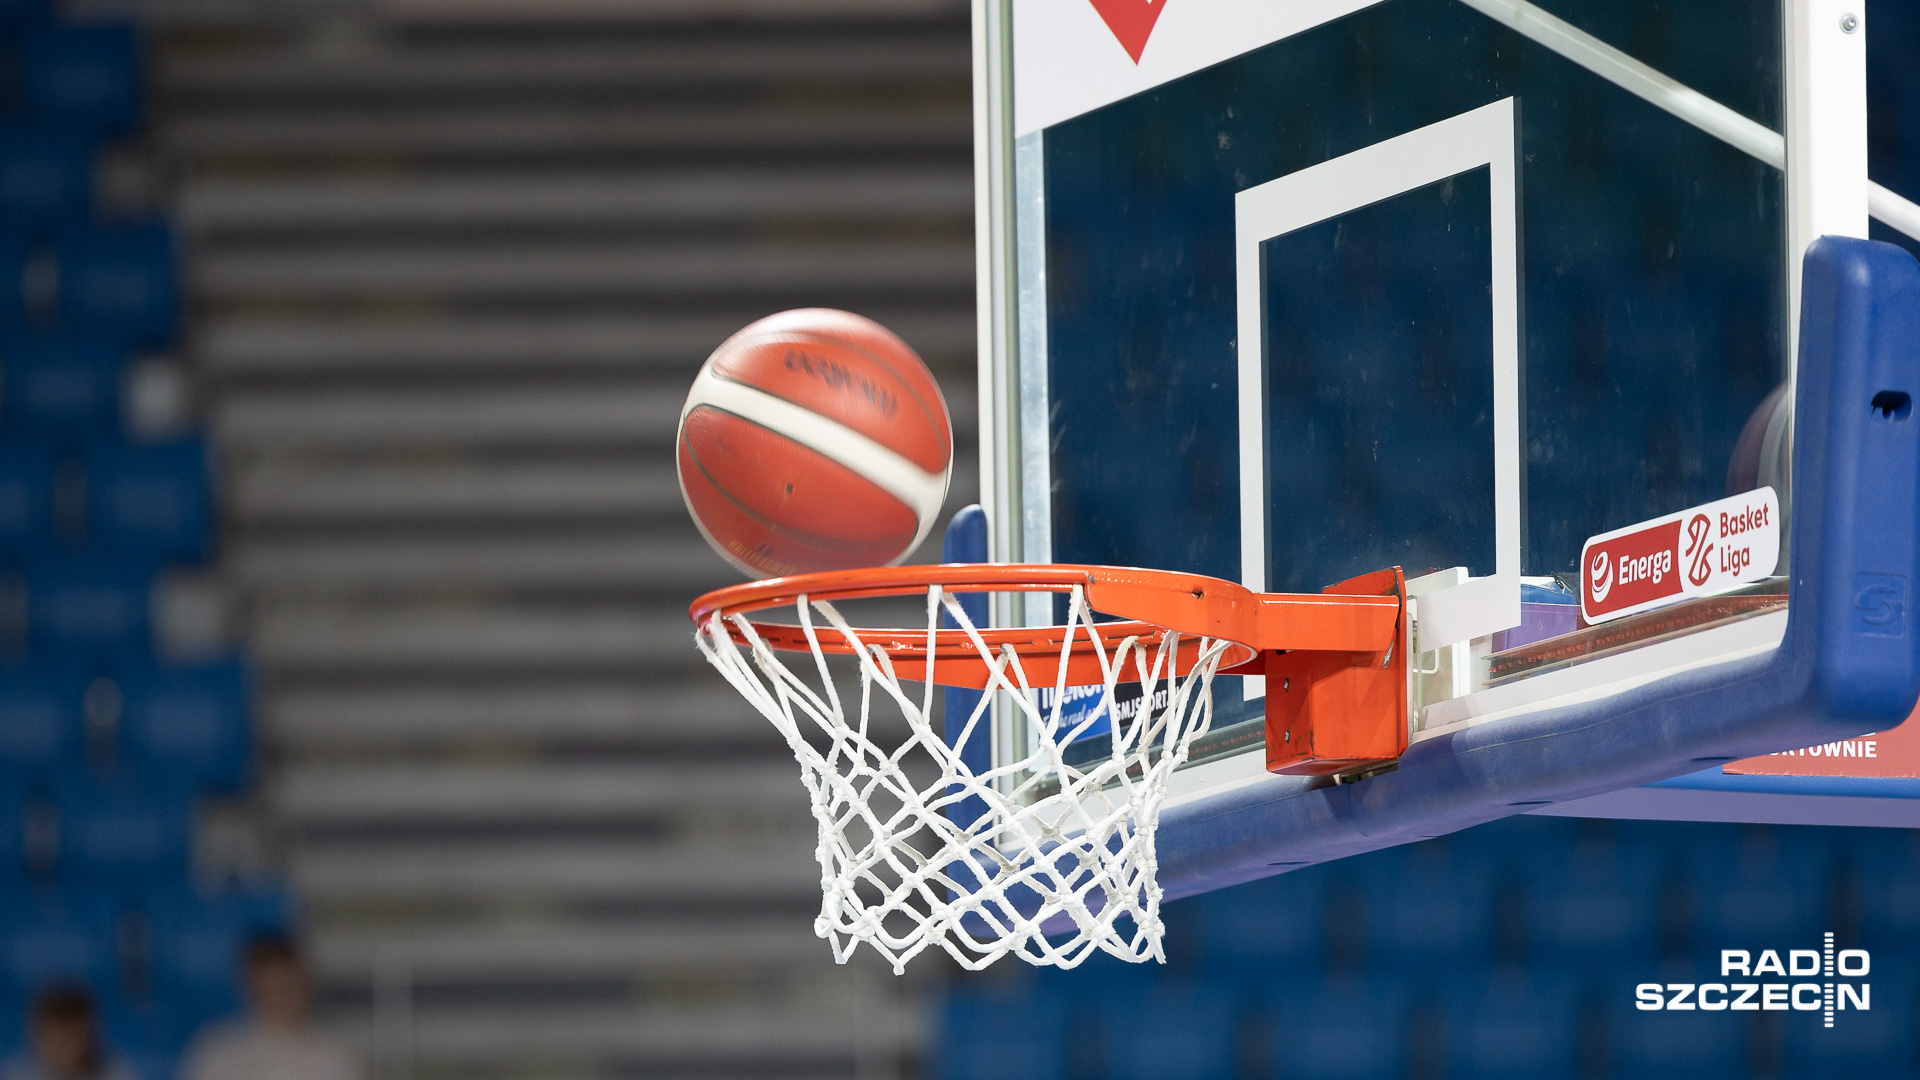 Koszykarze PGE Spójni od porażki rozpoczęli zmagania w Energa Basket Lidze. Stargardzianie w sobotni wieczór przegrali na wyjeździe z mistrzem Polski Śląskiem Wrocław 66:99 w inauguracyjnej kolejce spotkań.